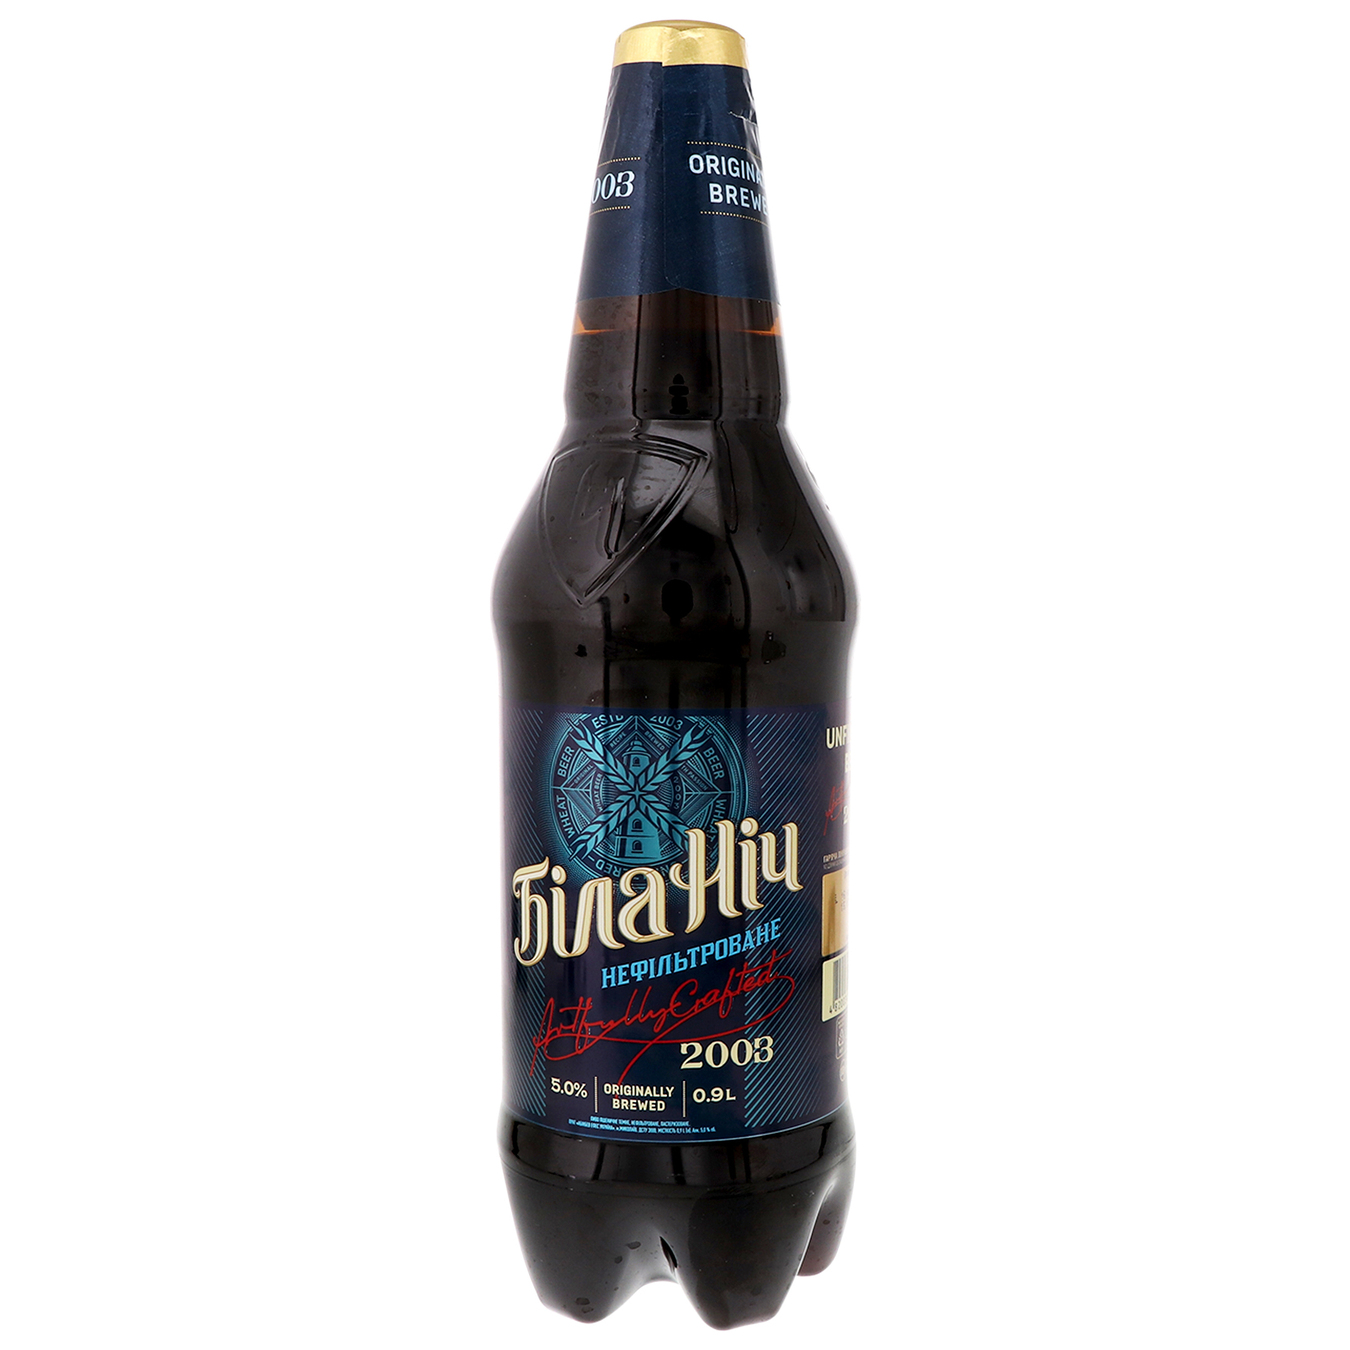 Пиво Черниговское Белая Ночь темное нефильтрованное 4,8% 0,9л 2